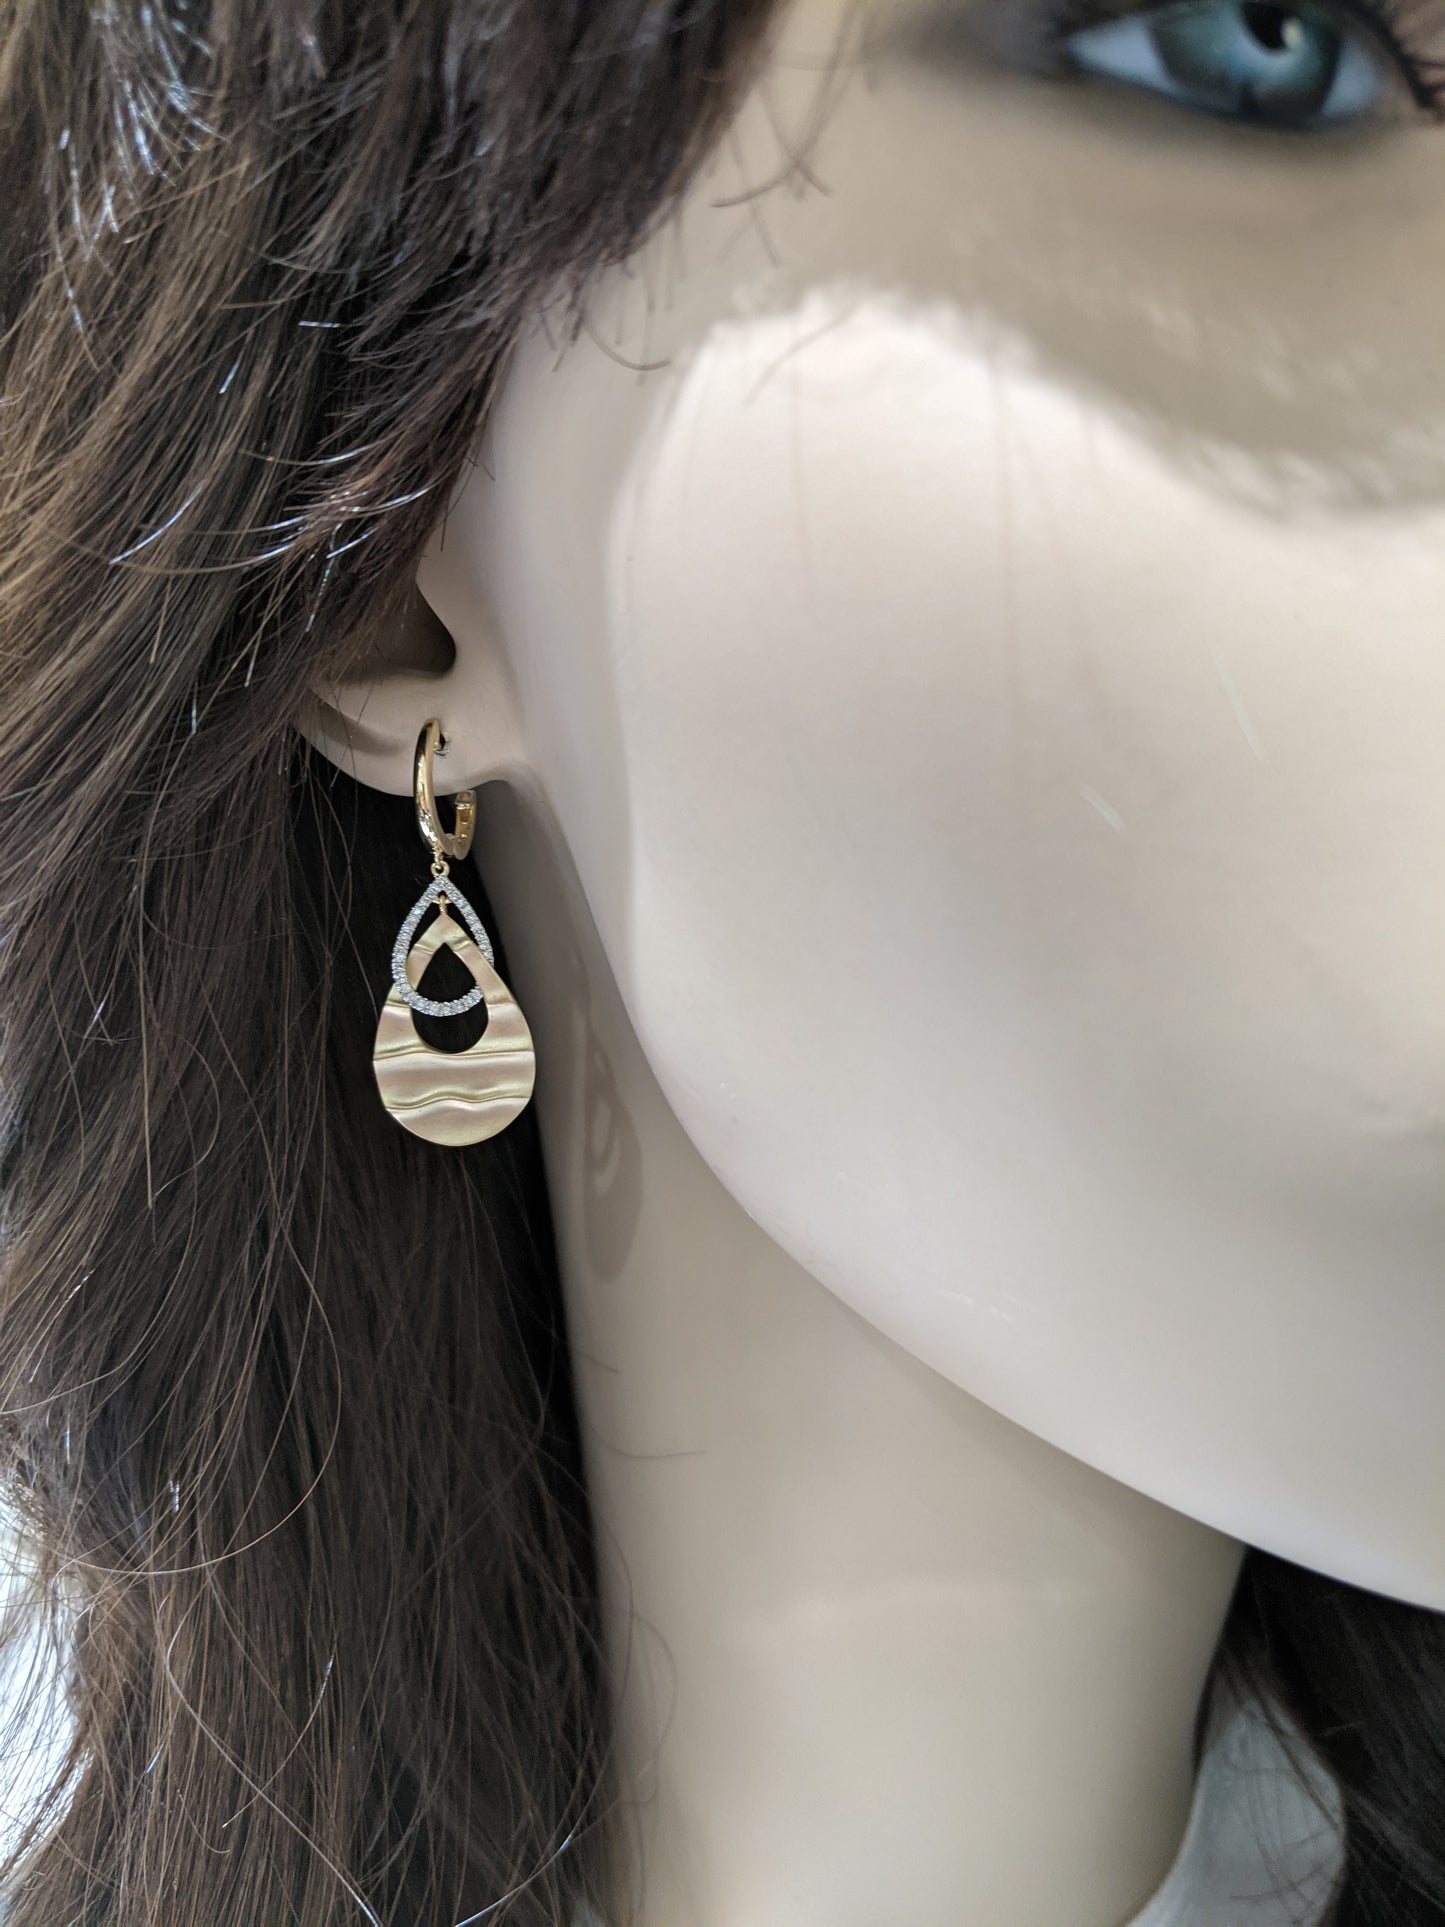 14K Gold And Diamond Interlinked Teardrop Earrings - HK Jewels